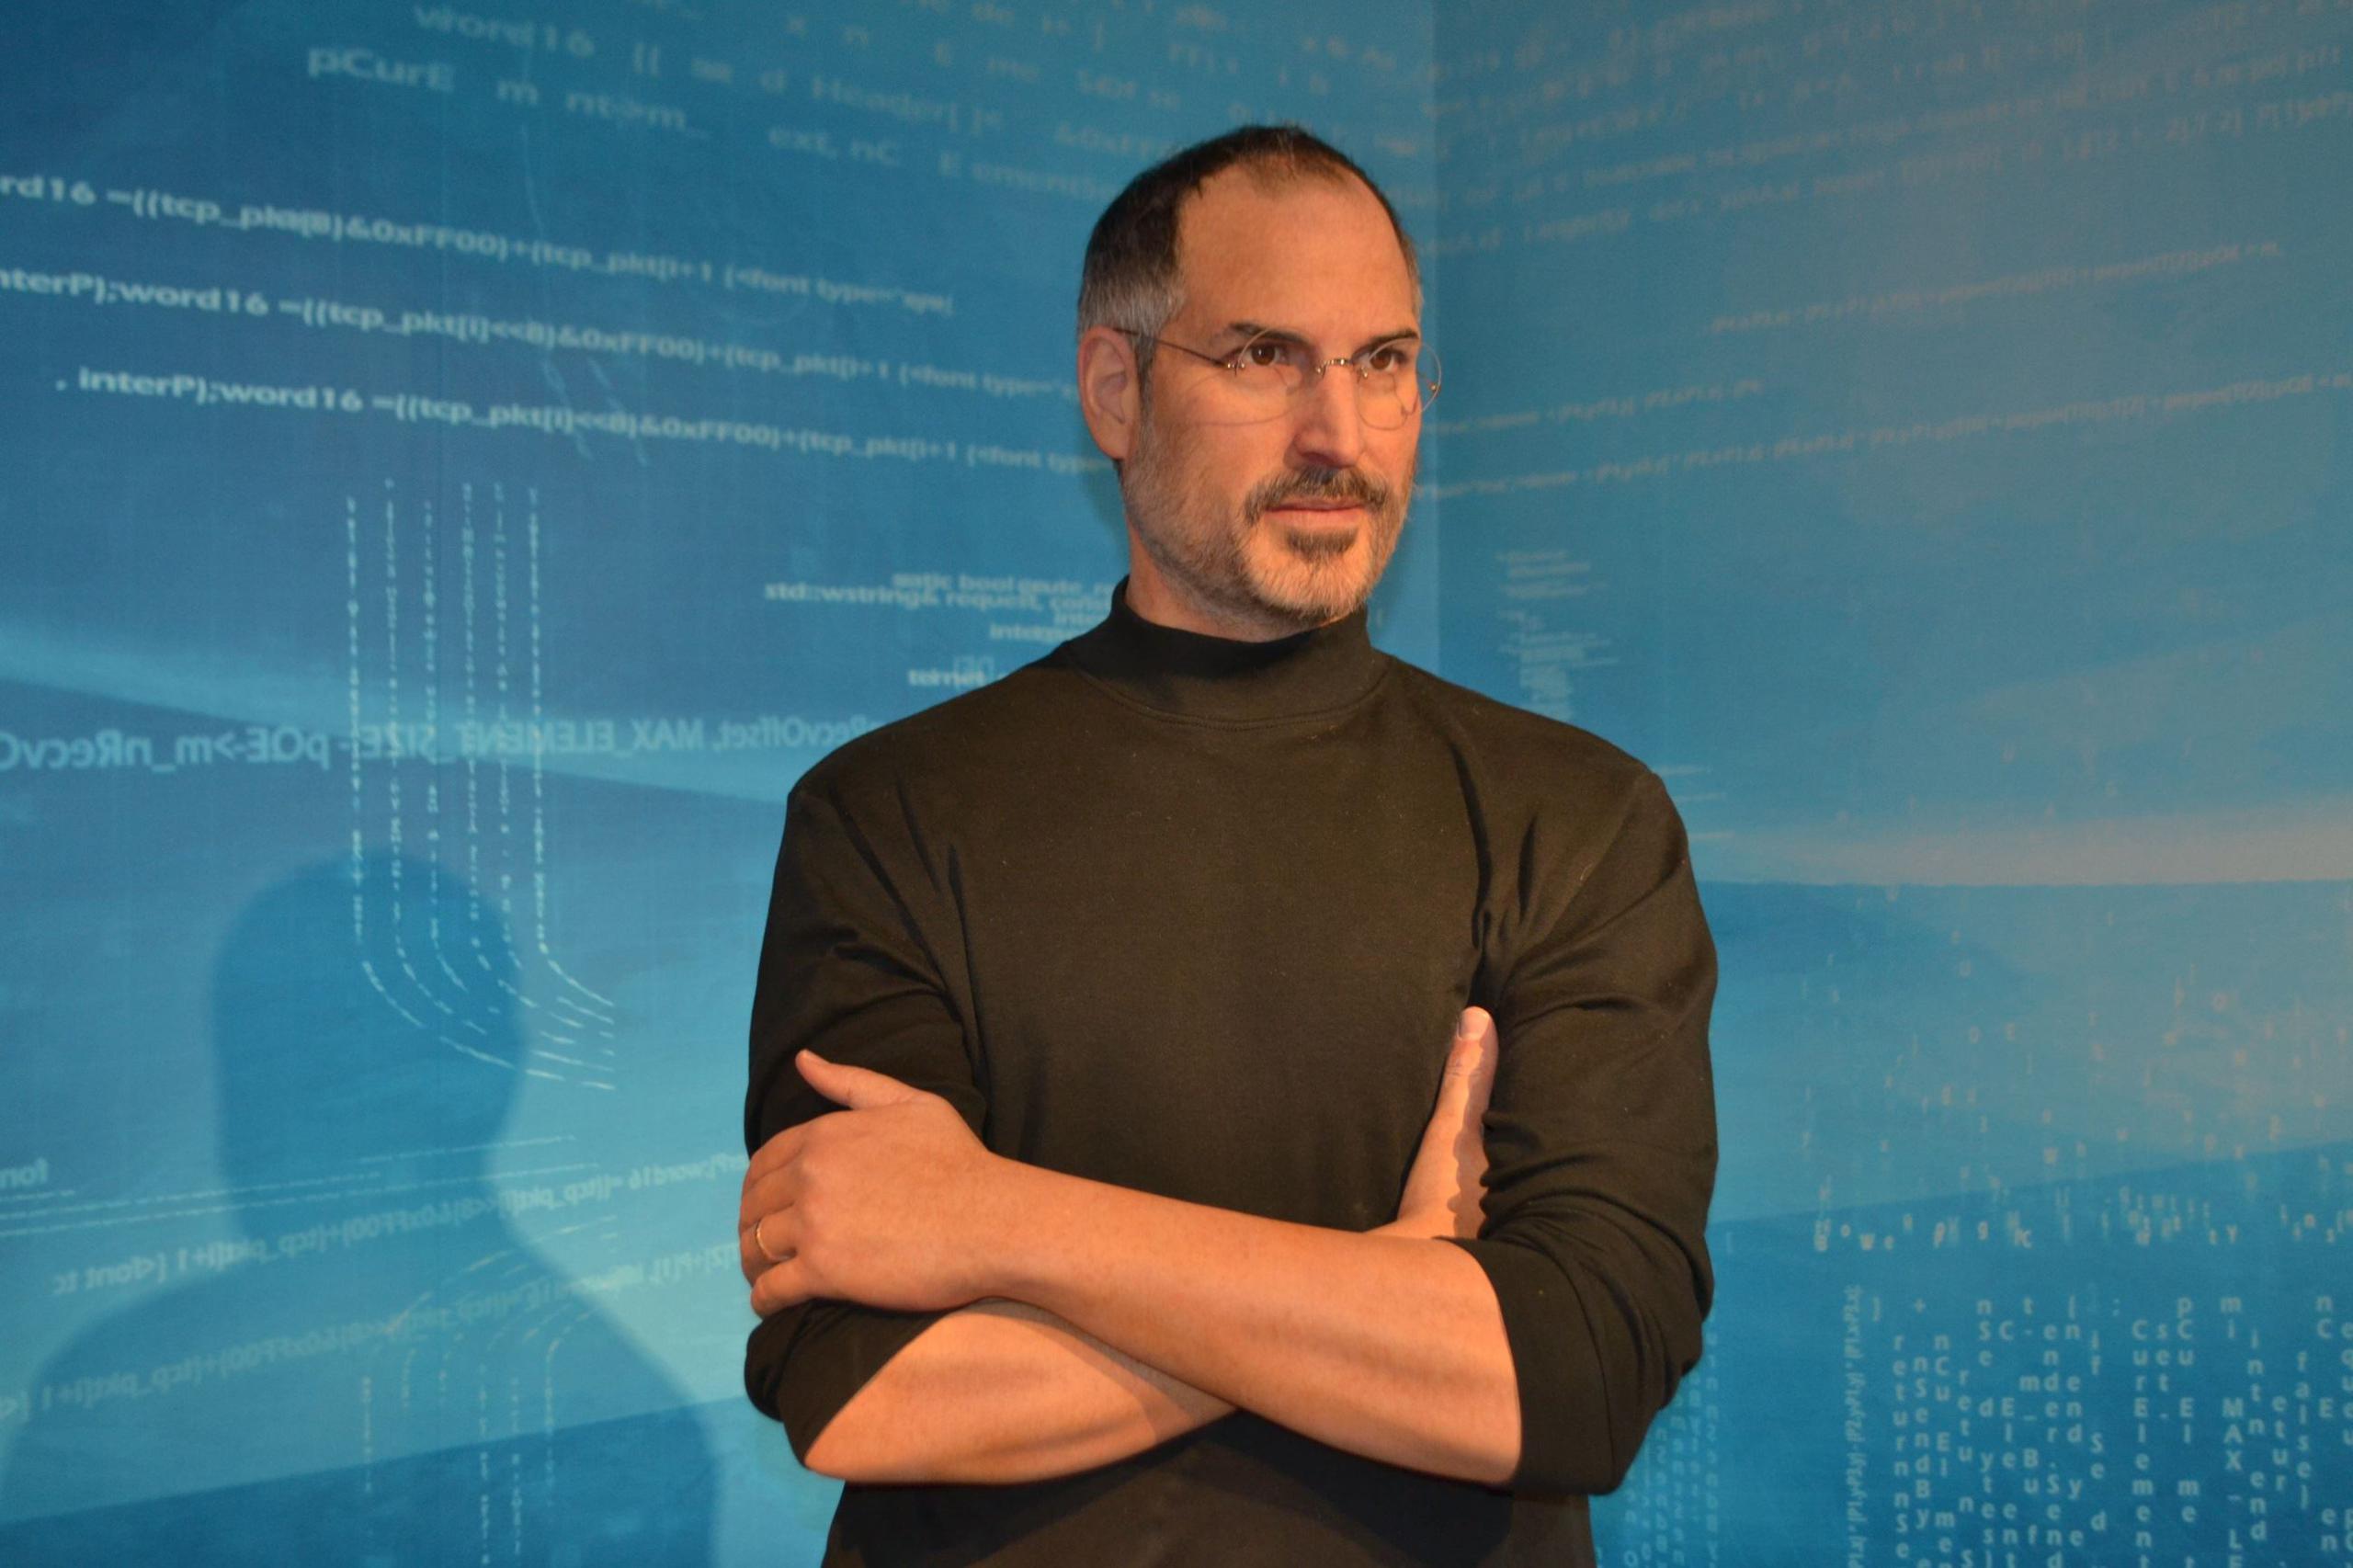 La figura de cera de Steve Jobs es una de las 70 estatuas en el Museo de Cera de Madame Tussauds, que abre el 4 de mayo en Orlando, Florida. (Suministrada)